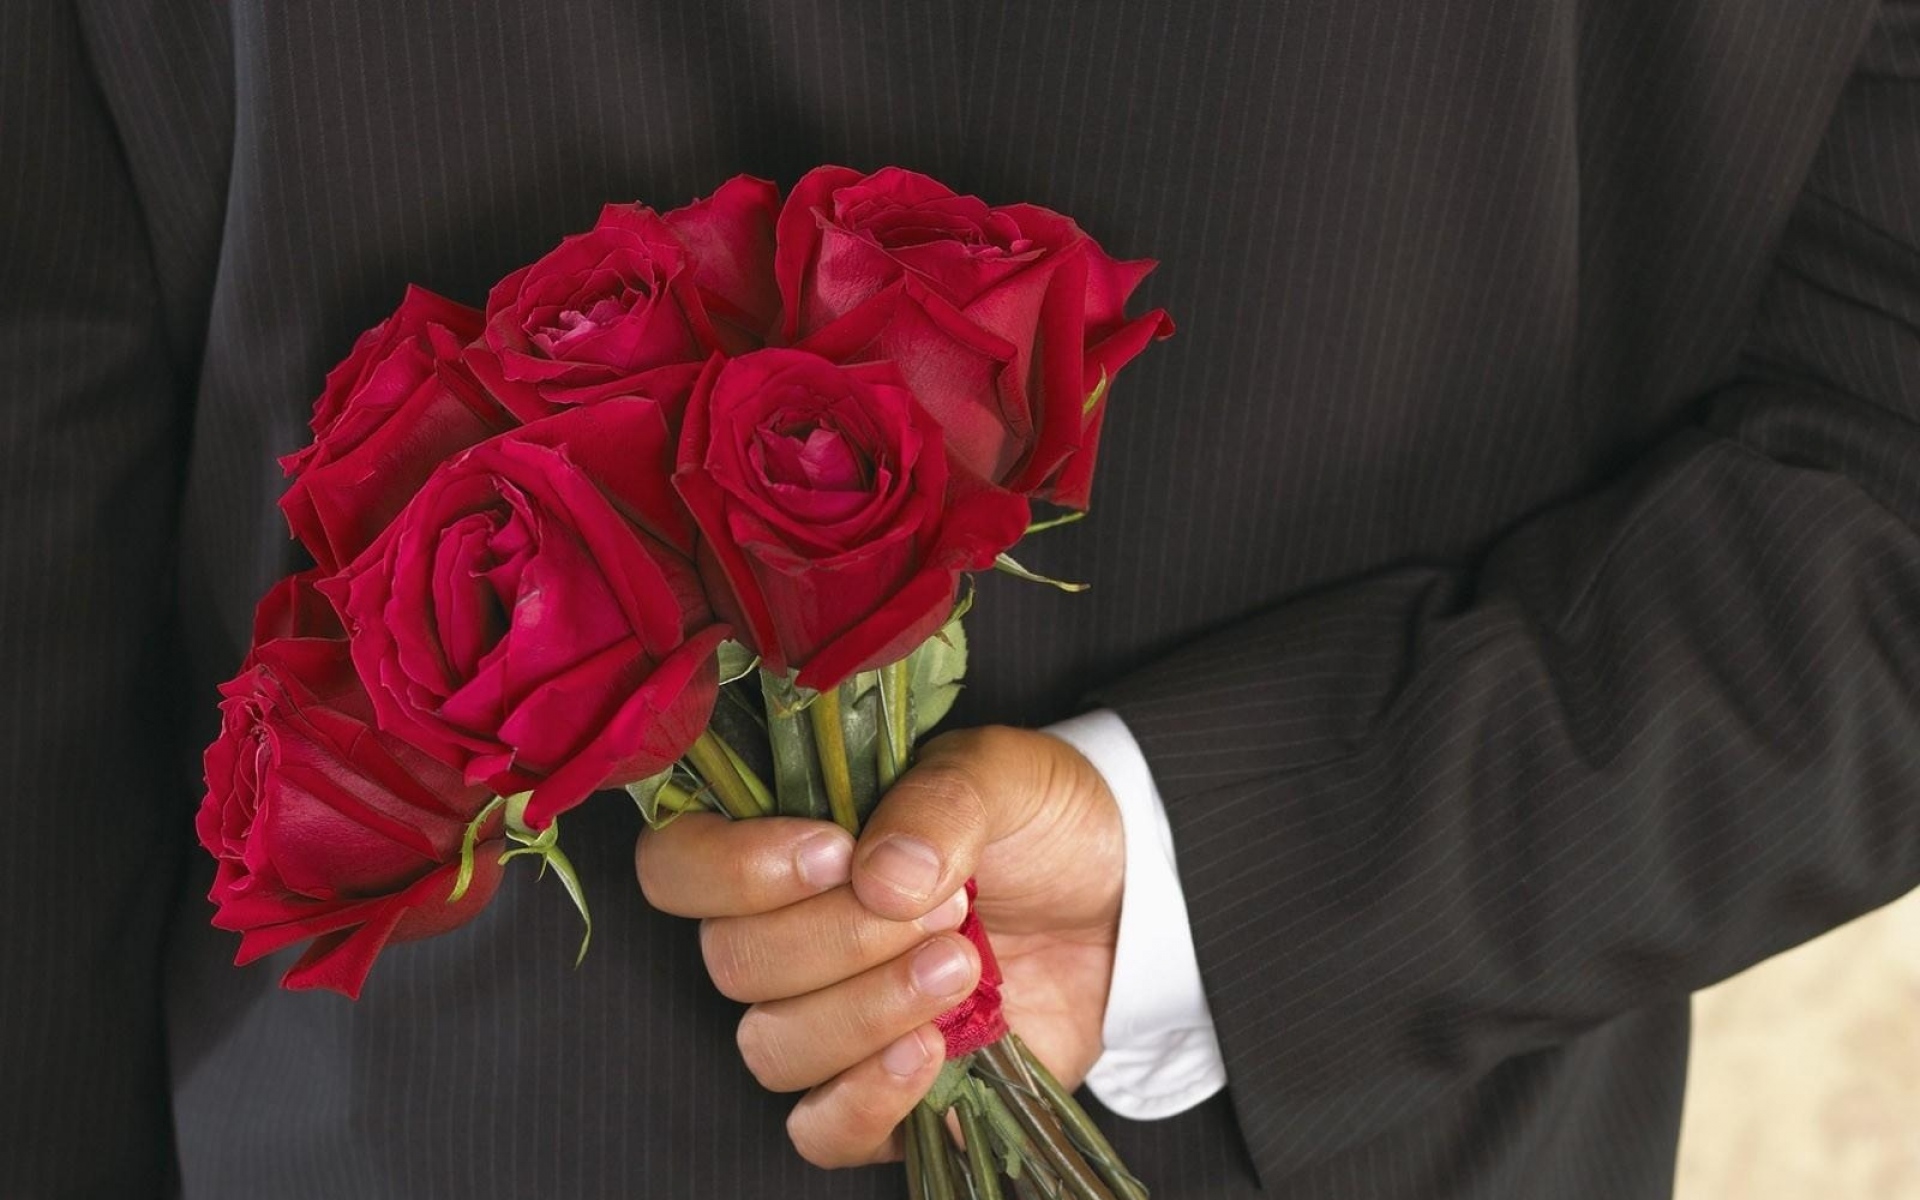 Картинки Розы, цветы, букет, мужчина, рука, сюрприз фото и обои на рабочий стол